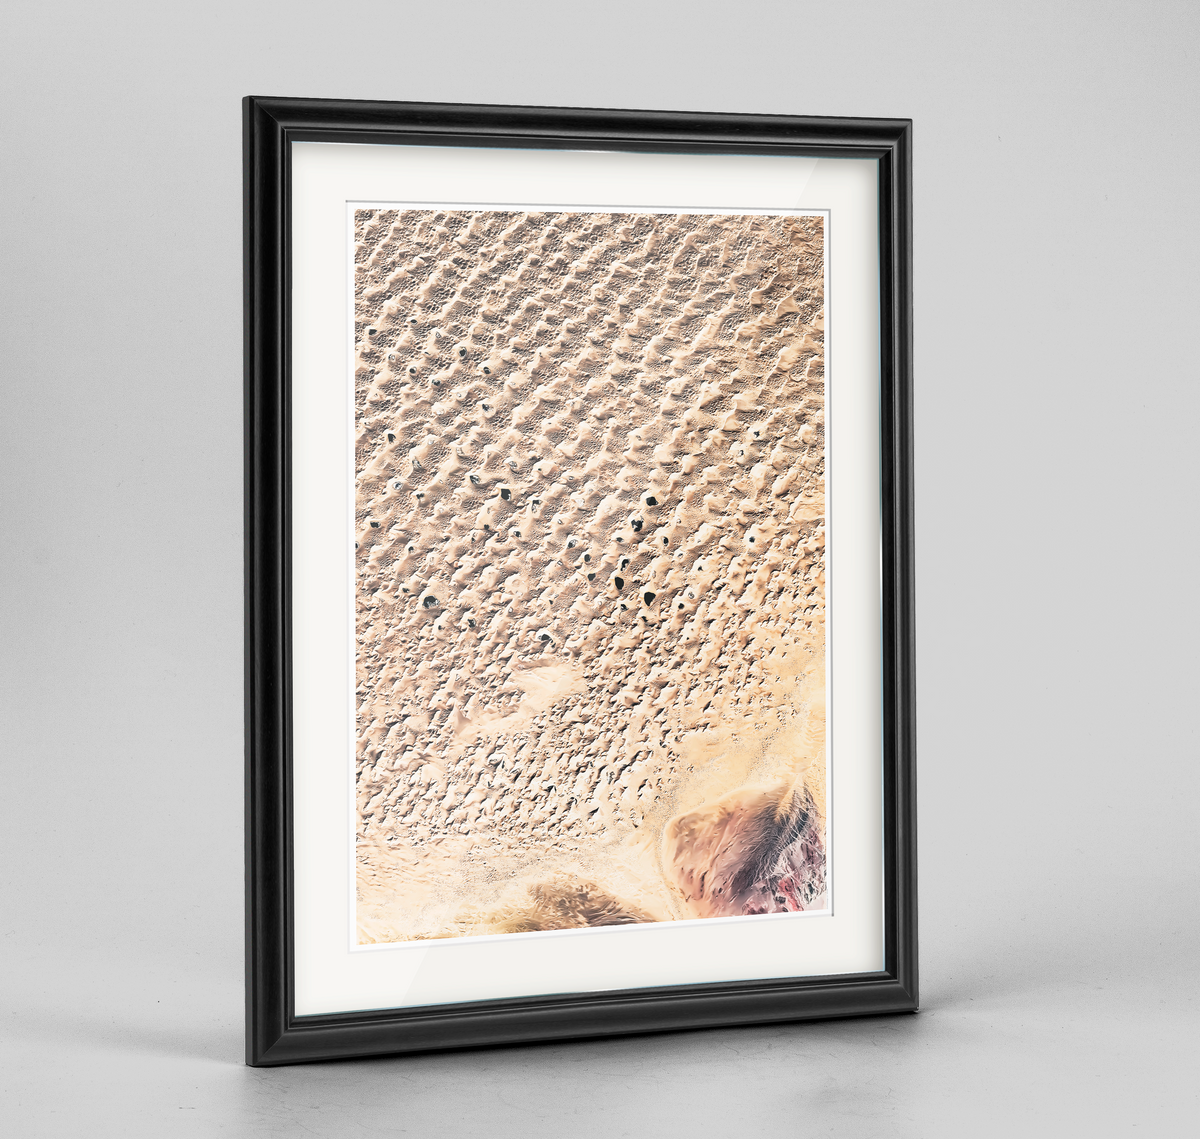 Gobi Desert Earth Photography Art Print - Framed